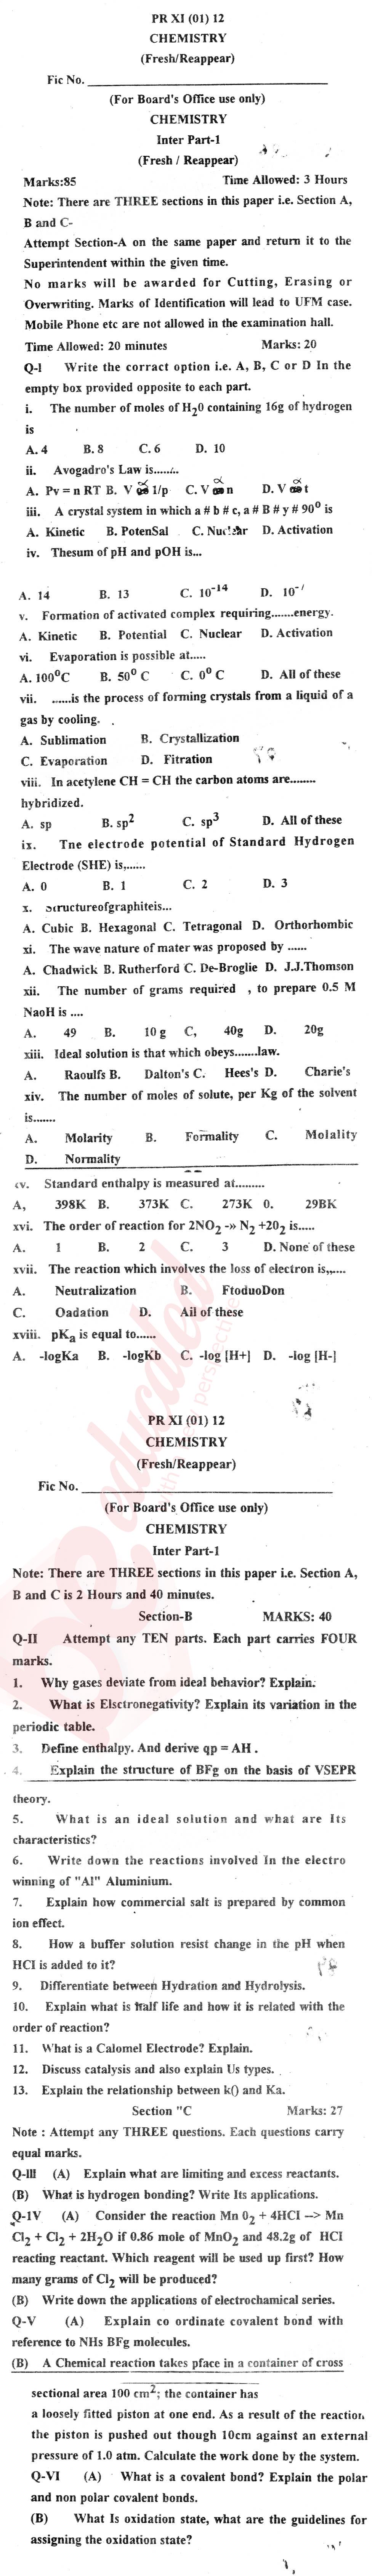 Chemistry FSC Part 1 Past Paper Group 1 BISE Mardan 2012